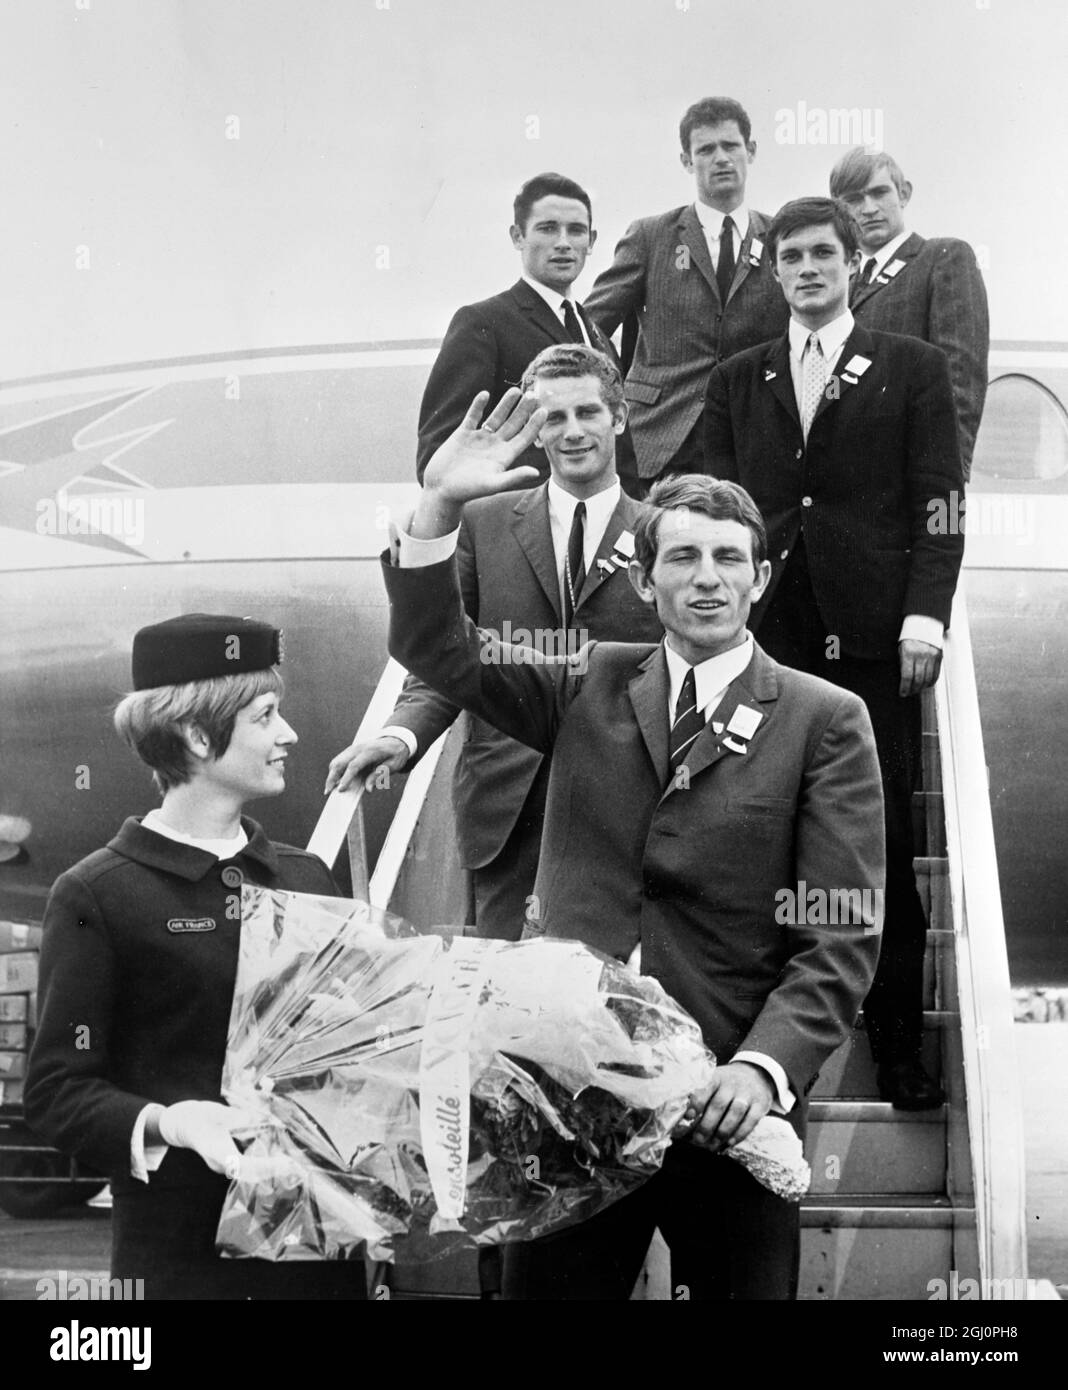 Paris : Jean Pierre Danguillaume erhält von einer Air France-Gastgeberin einen traditionellen Blumenstrauß, als er und Mitglieder seines Teams am Flughafen Orly ankamen 28. Mai 1969 nach ihrem Sieg beim 22. Internationalen Friedensrennen , Das berühmteste Radrennen, das in den osteuropäischen Ländern ausgetragen wird. Stockfoto